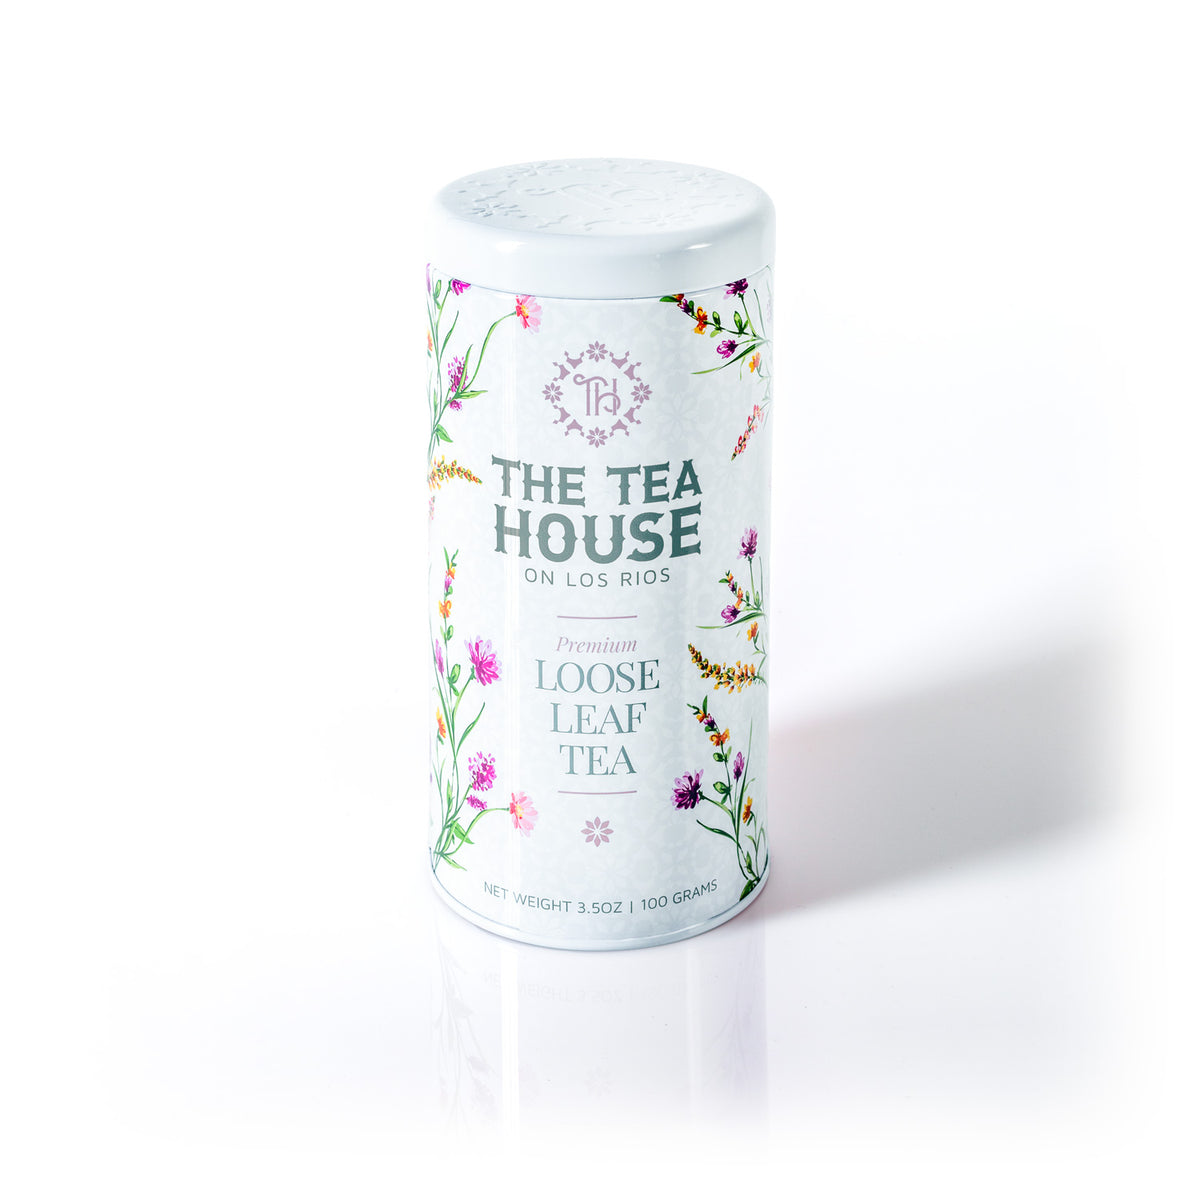 Experience The Tea House on Los Rios with a 100g Loose Leaf Tea Tin